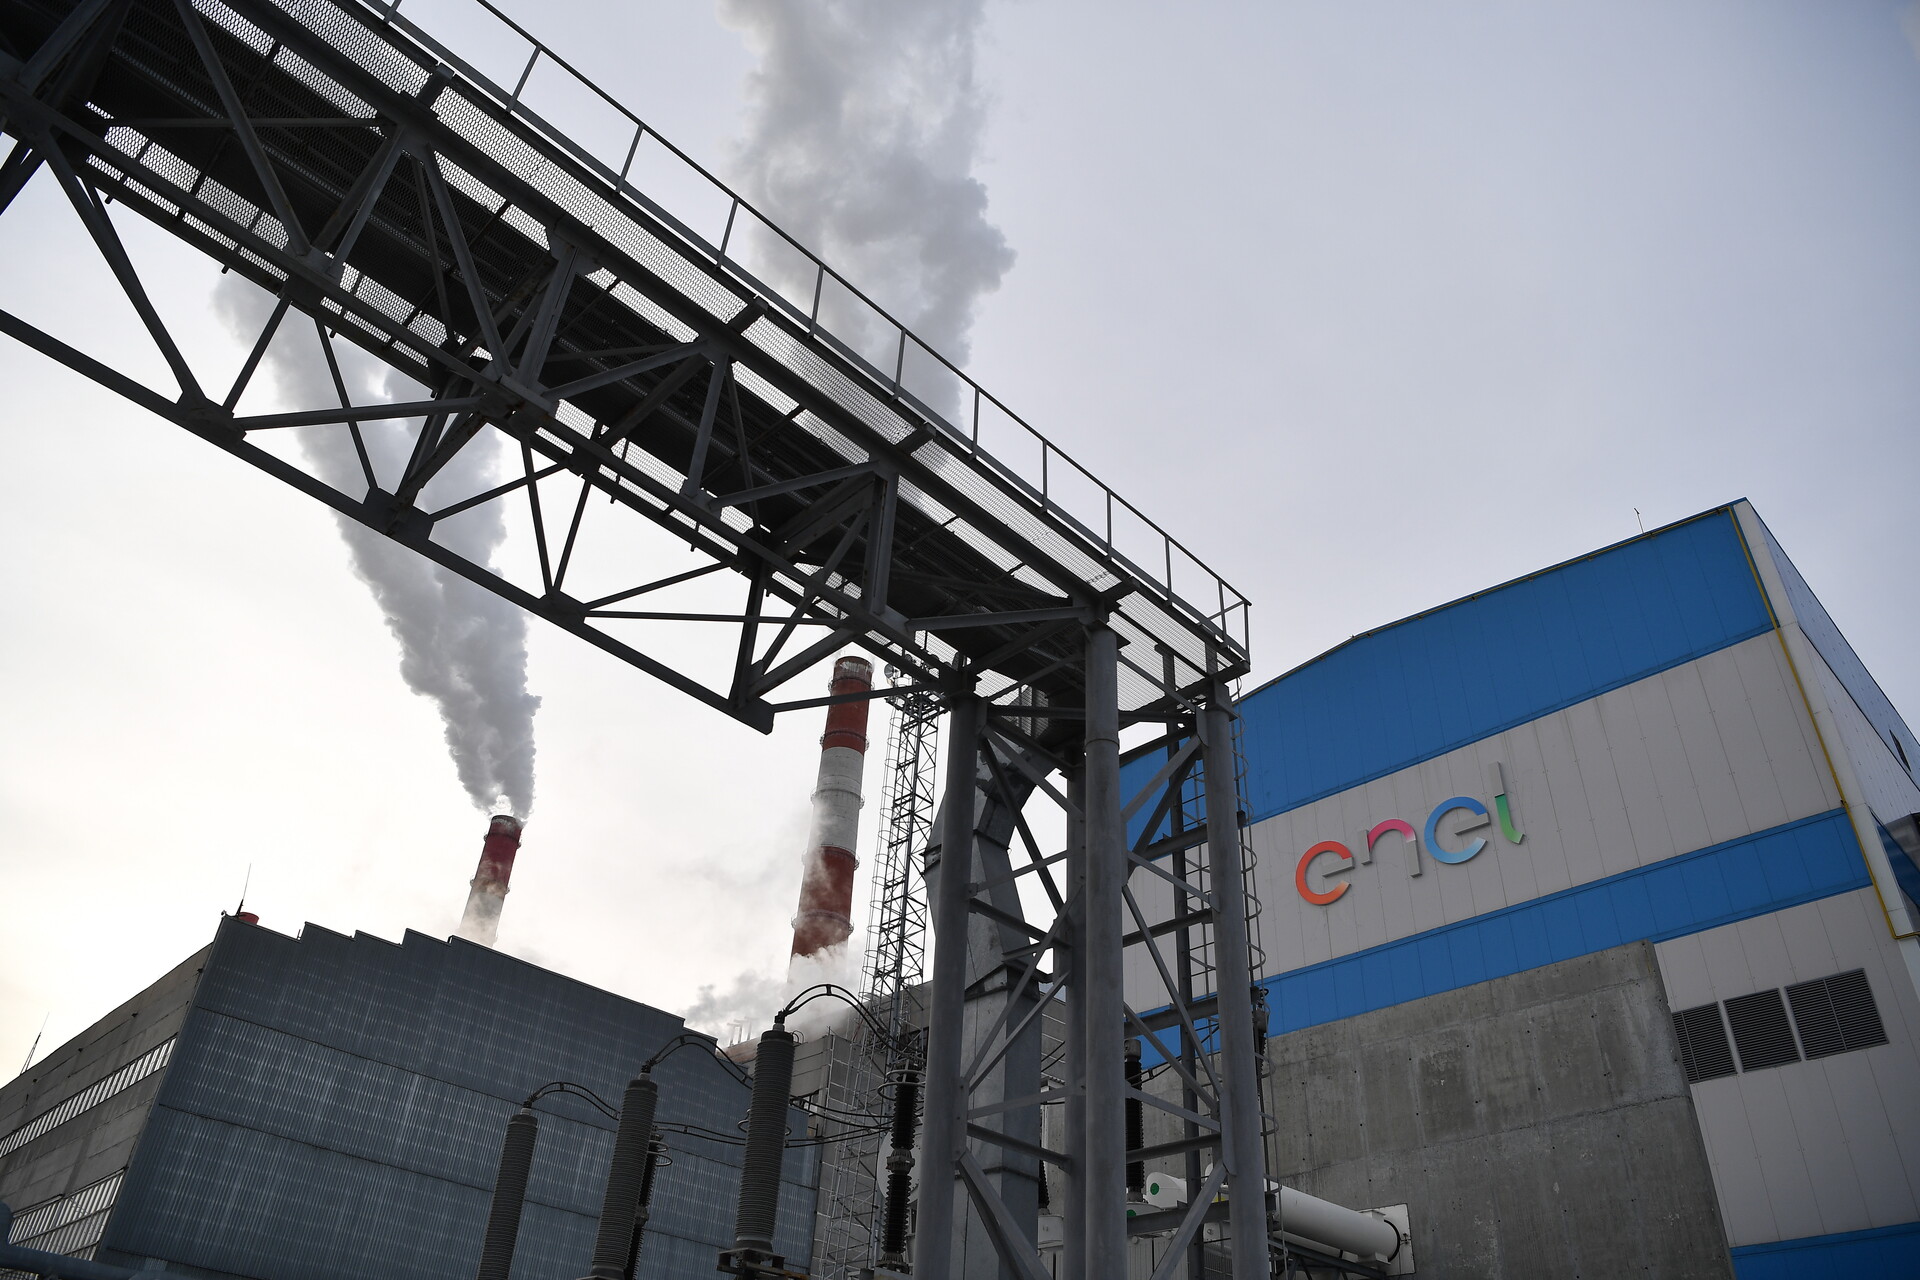 La centrale elettrica di Sredneuralsk (Regione di Sverdlovsk) di Enel Russia. A ottobre 2022 Enel ha venduto il suo pacchetto azionario, lasciando il mercato russo